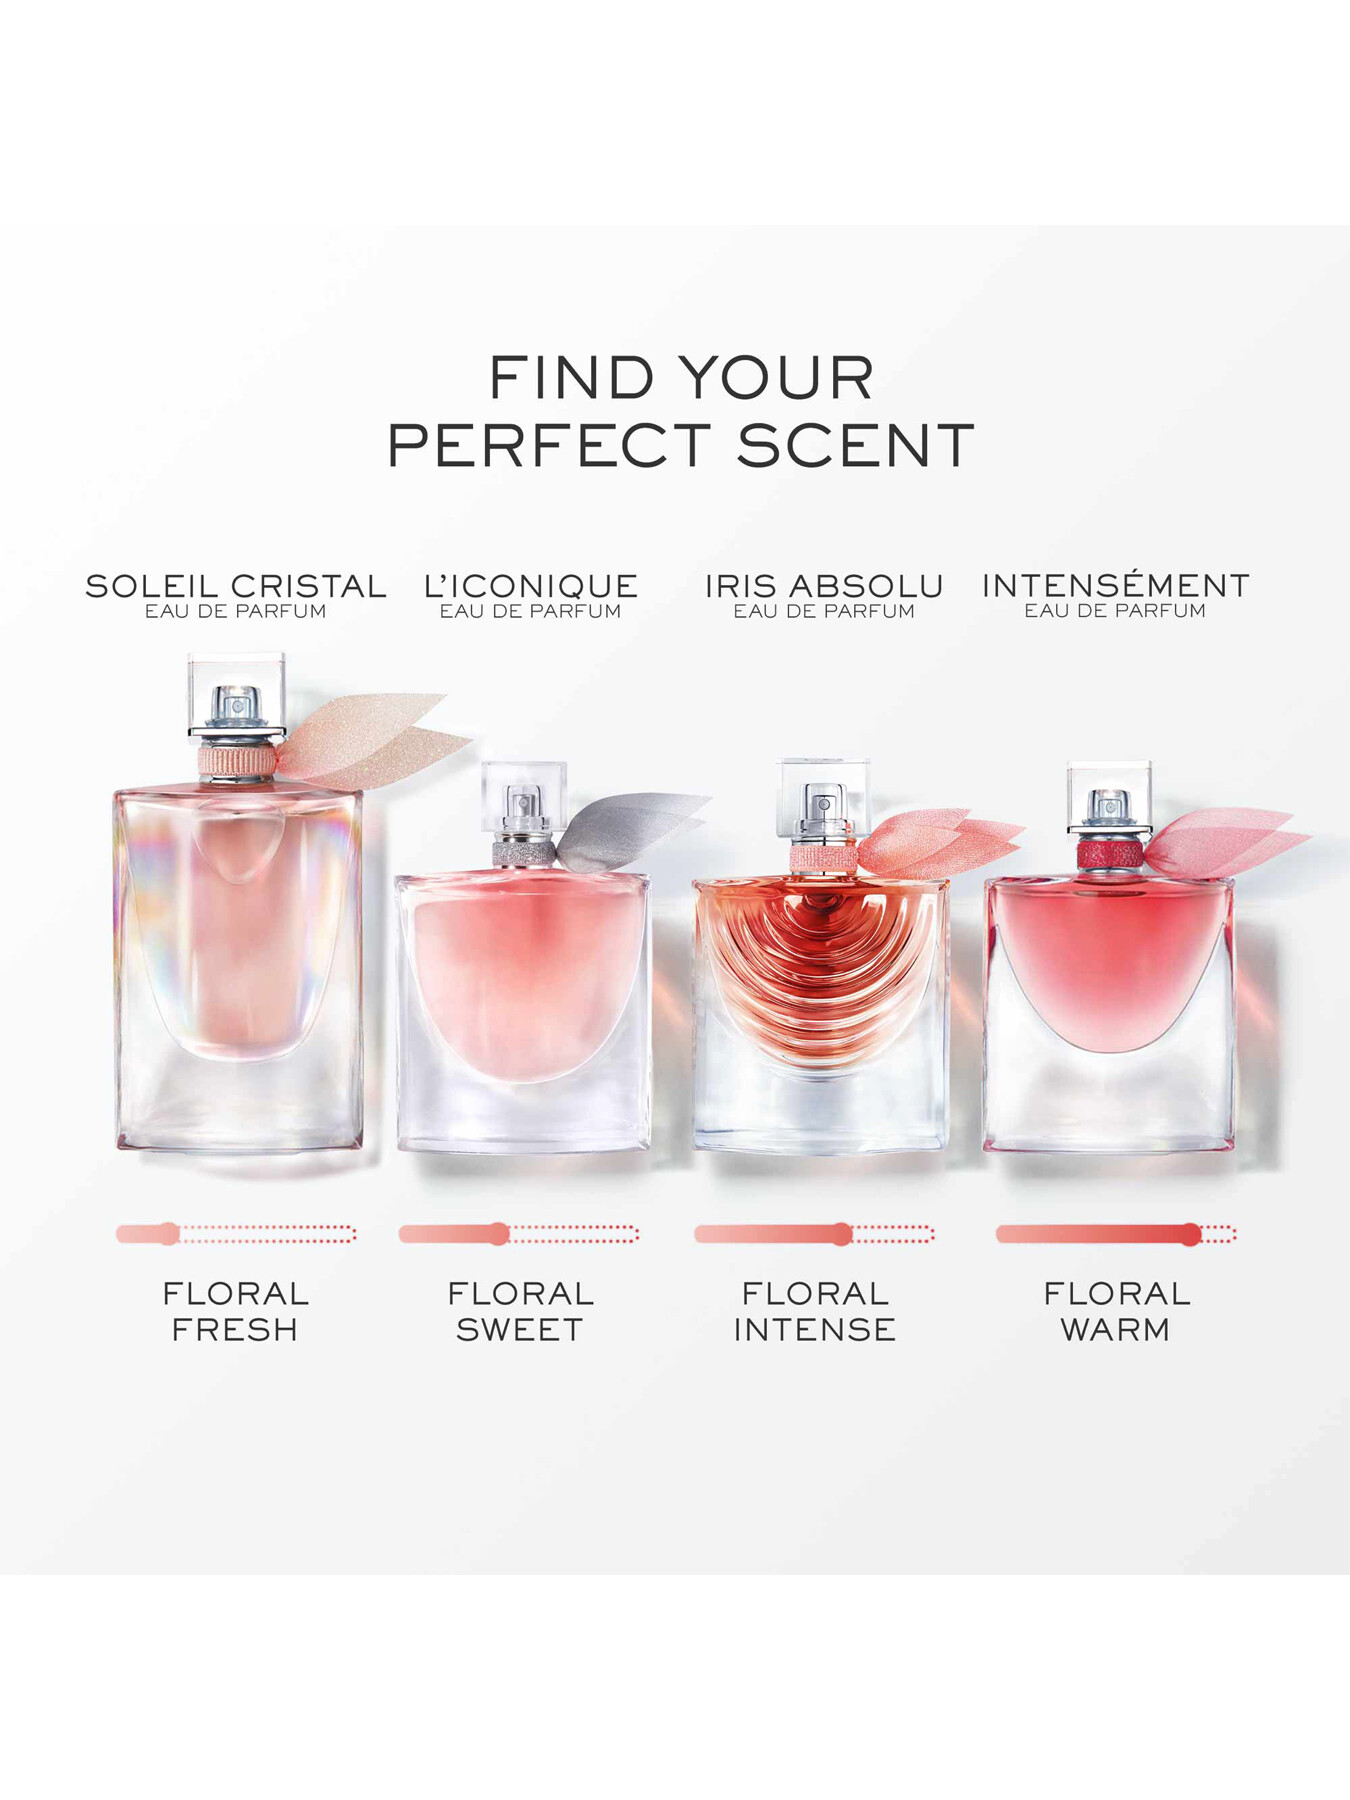 Lancôme La Vie est Belle Eau de Parfum 50 ml | Women's Fragrances | Fenwick